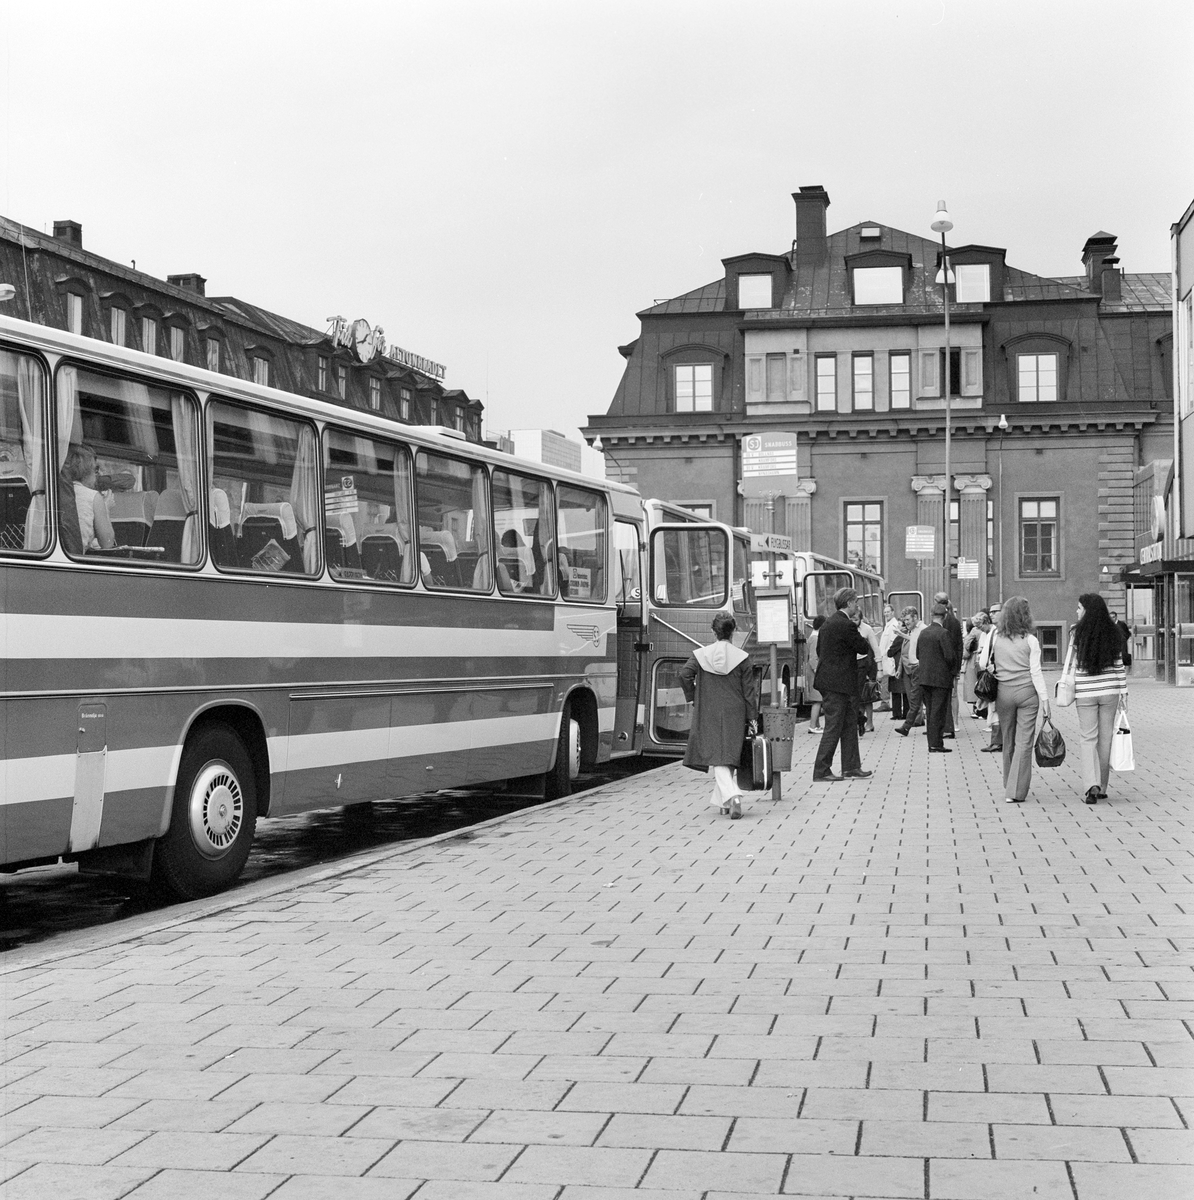 SJ, Statens Järnvägars bussterminal, Klarabergsviadukten